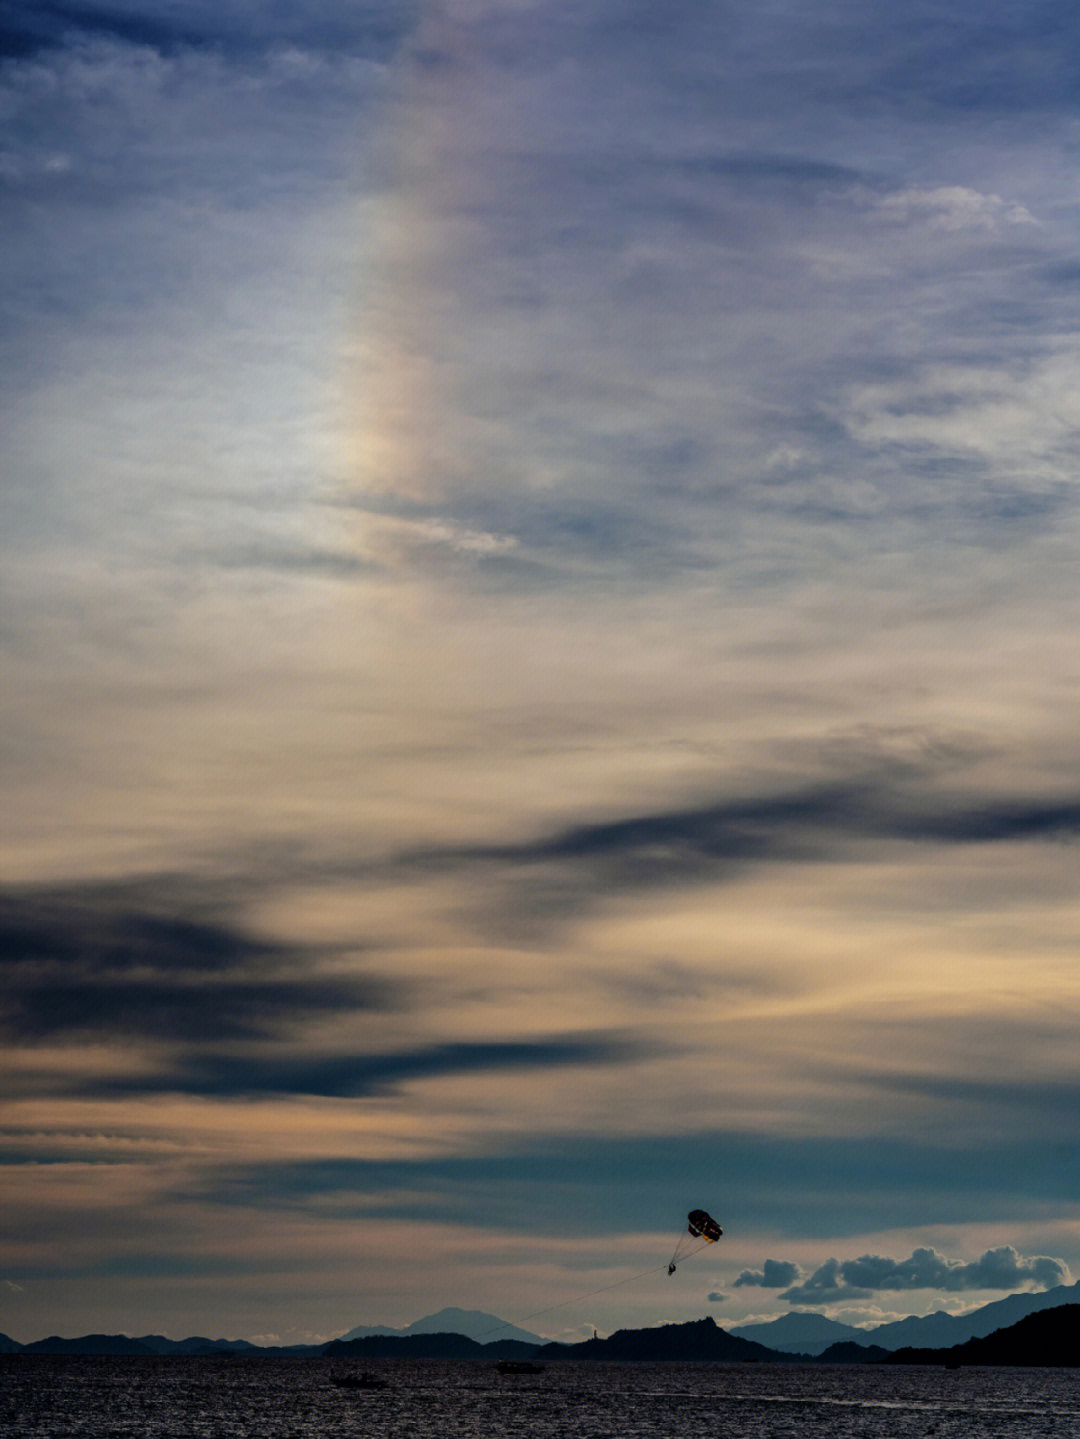 p1 日落时的幻日与滑翔伞p2 浓积云被维纳斯带染成淡红p3 暮时繁忙的